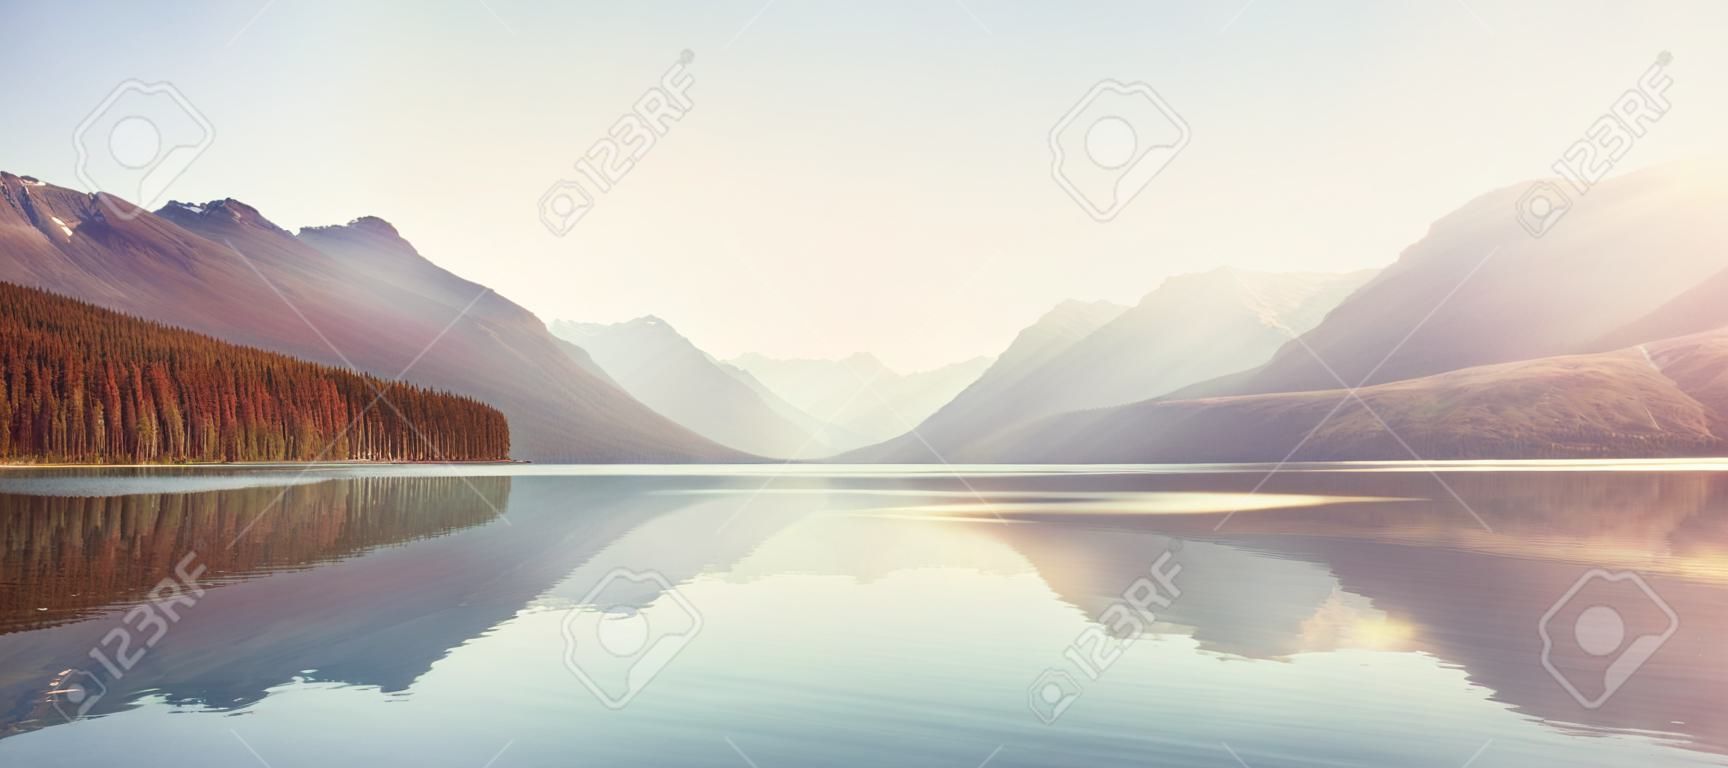 Hermoso lago bowman con reflejo de las espectaculares montañas en el parque nacional de los glaciares, montana, estados unidos.